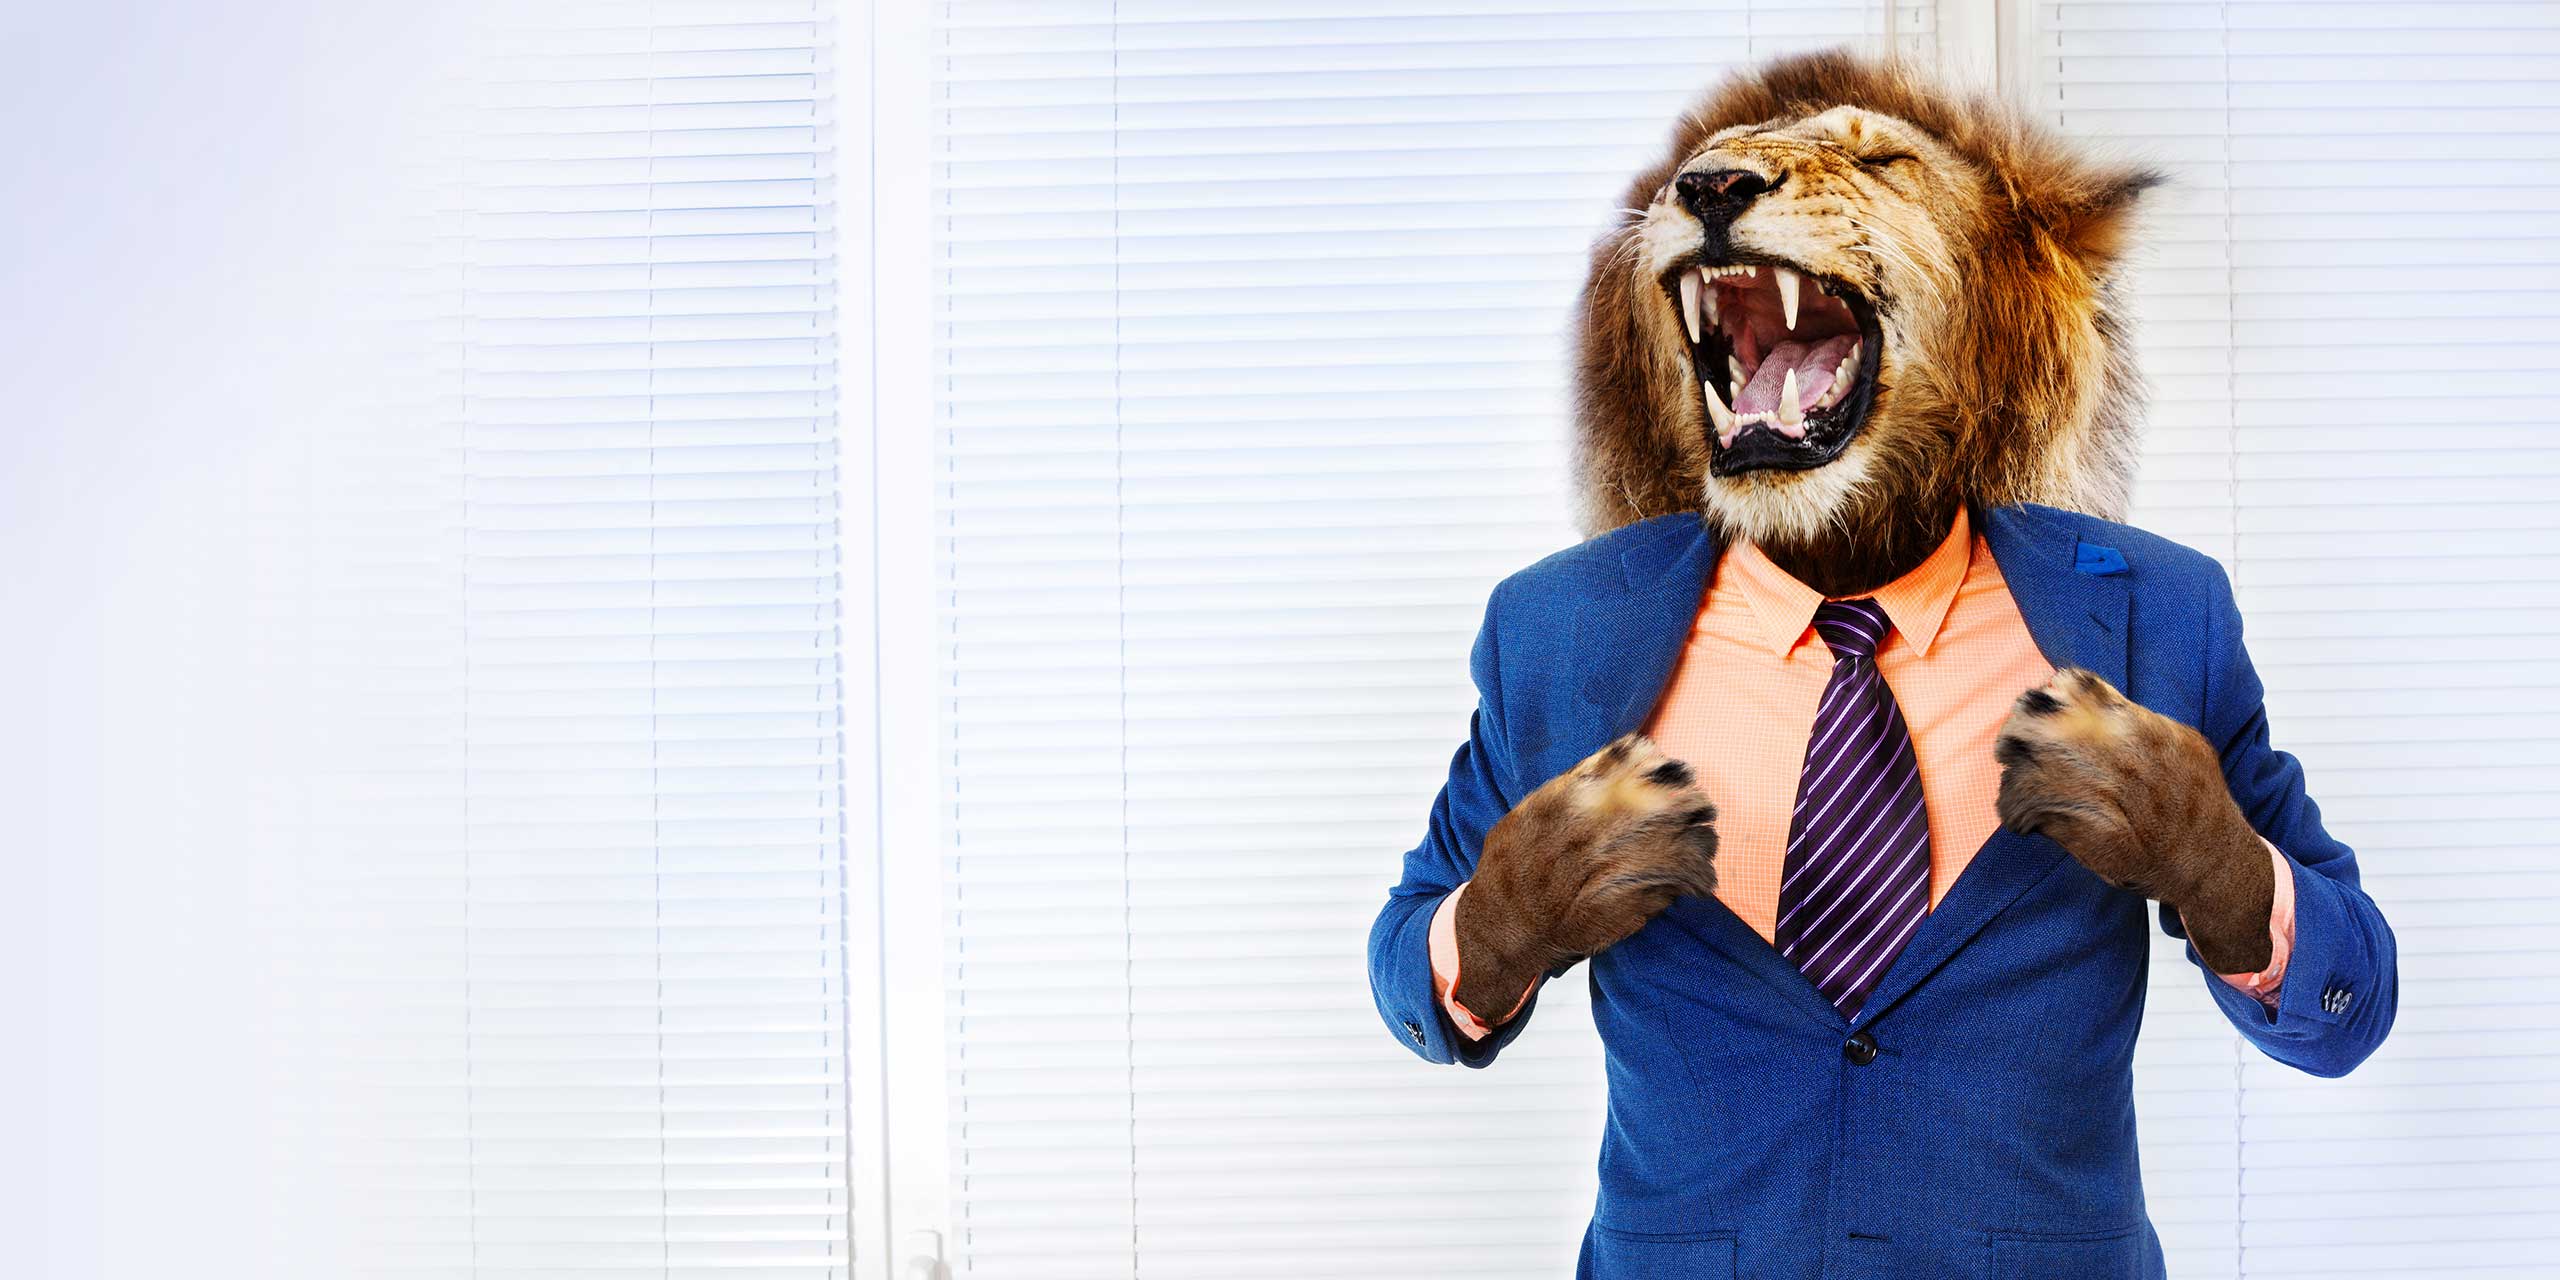 Business Mann mit Löwenkopf